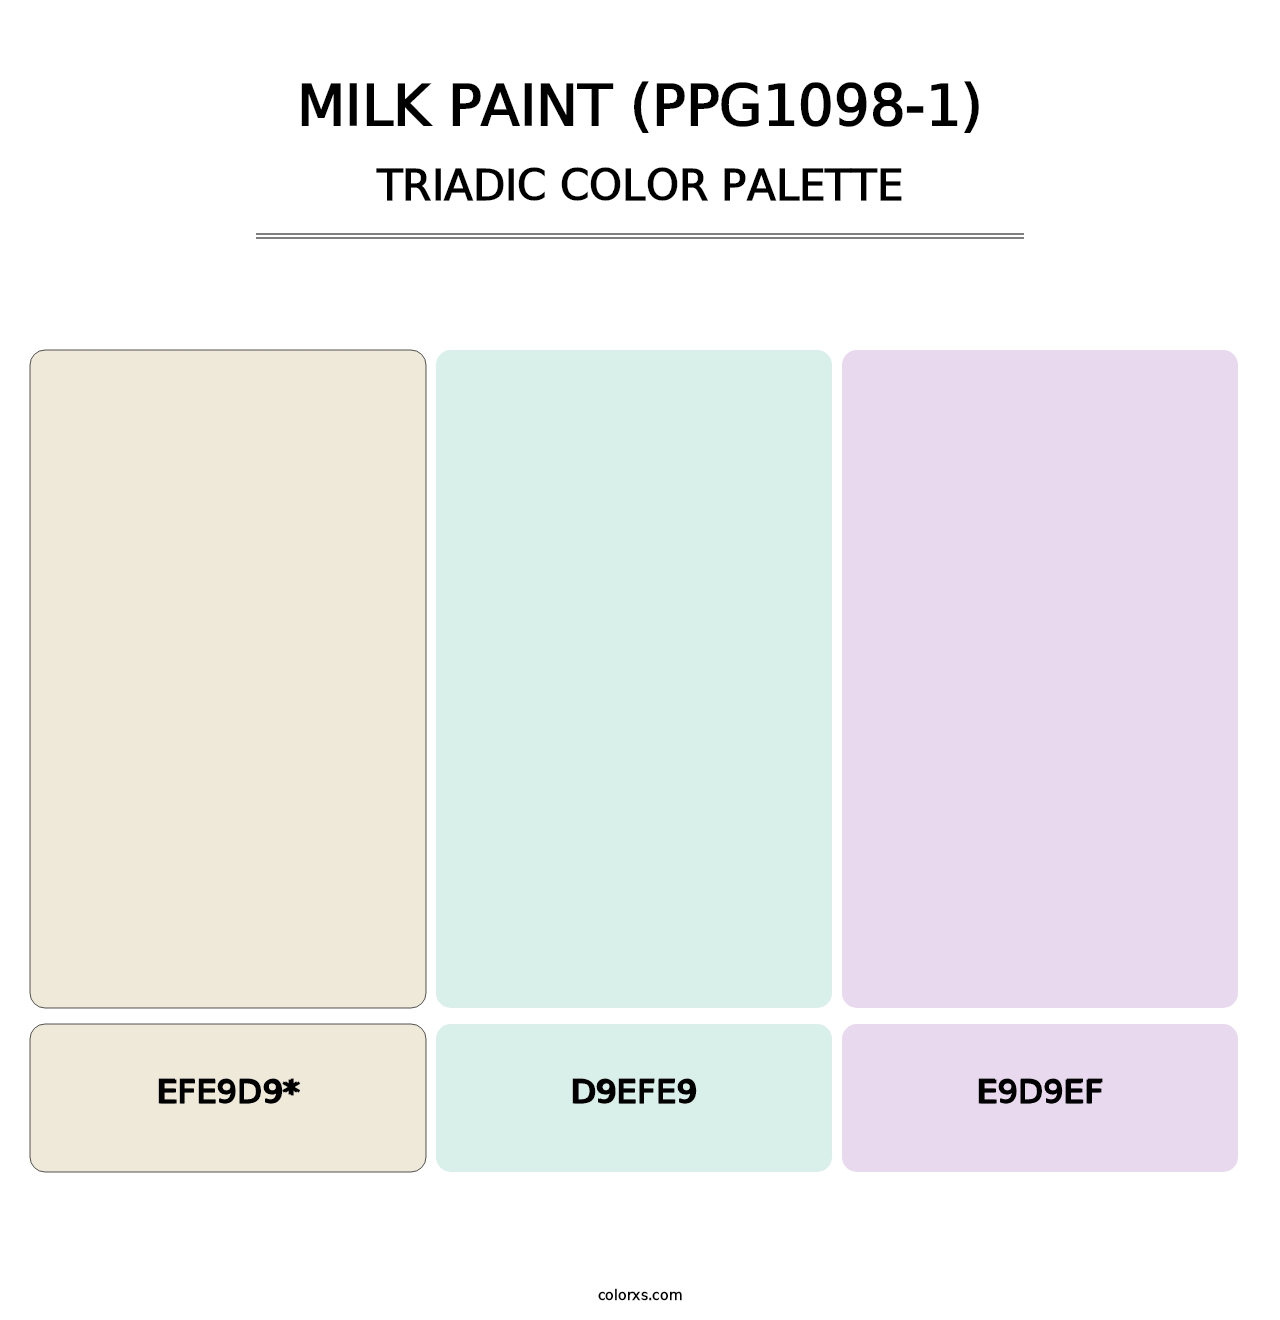 Milk Paint (PPG1098-1) - Triadic Color Palette